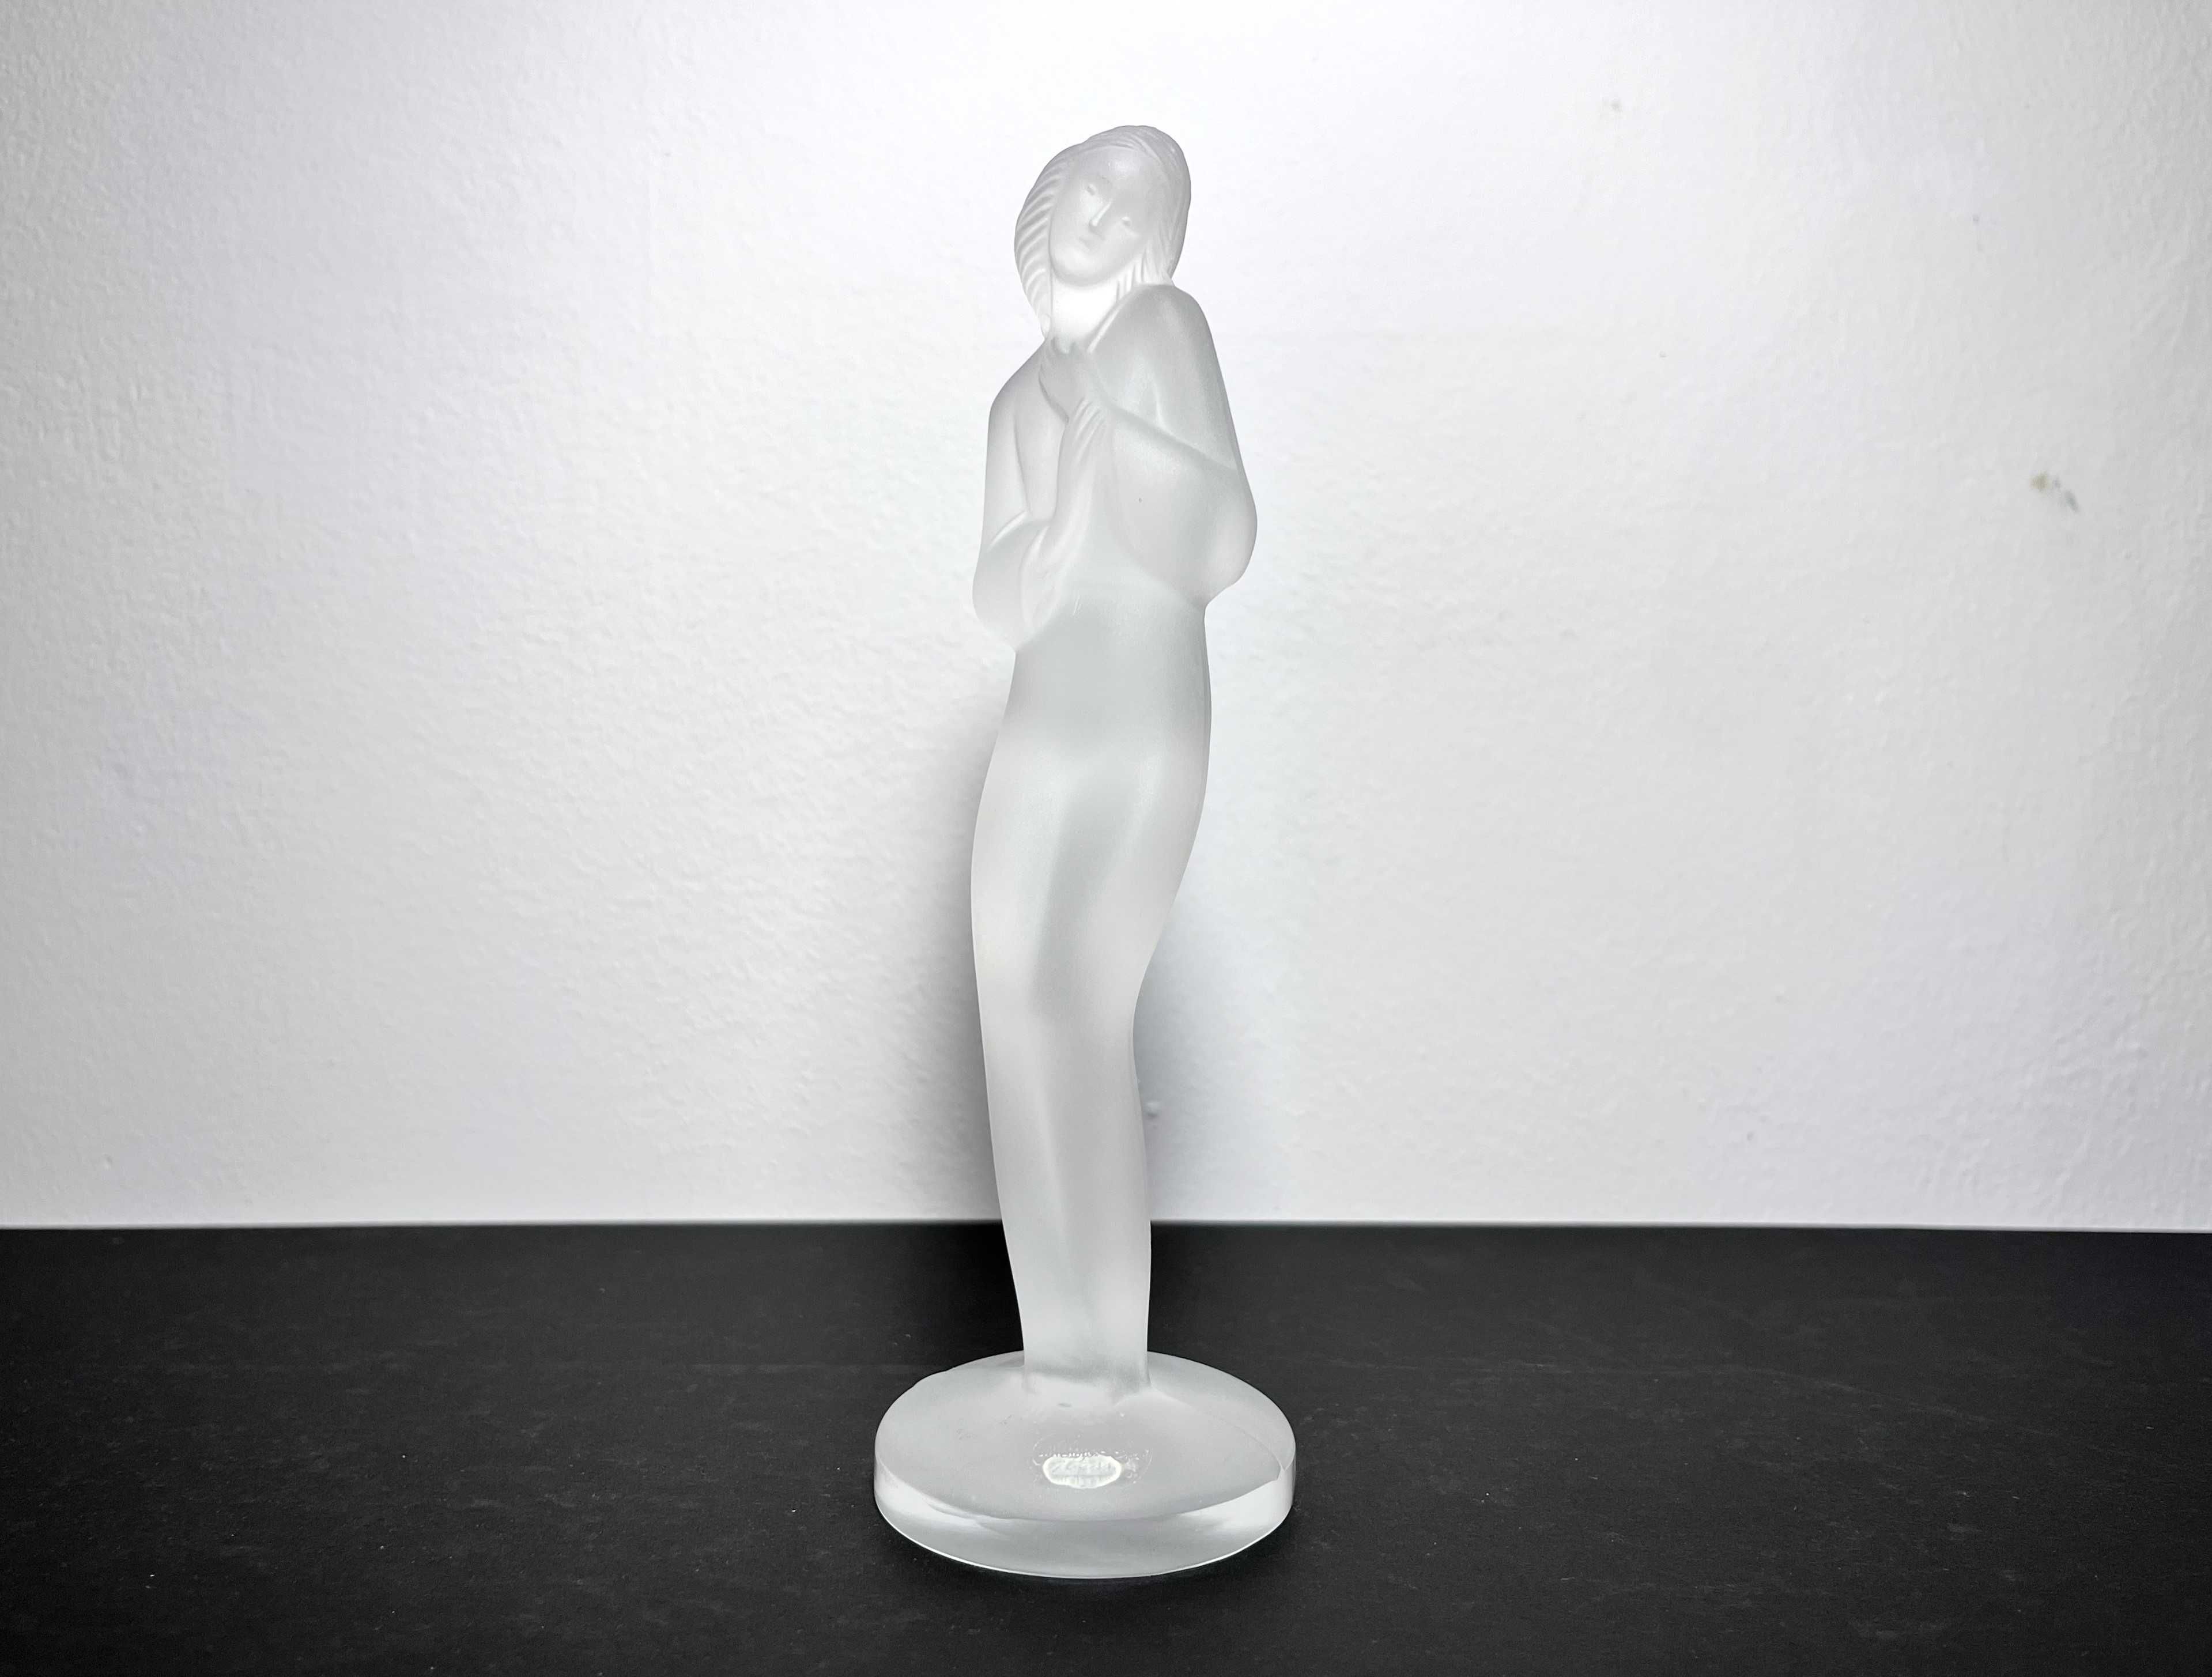 Szklana figurka kobieta w stylu Art Deco - Desna Bohemia szkło matowe